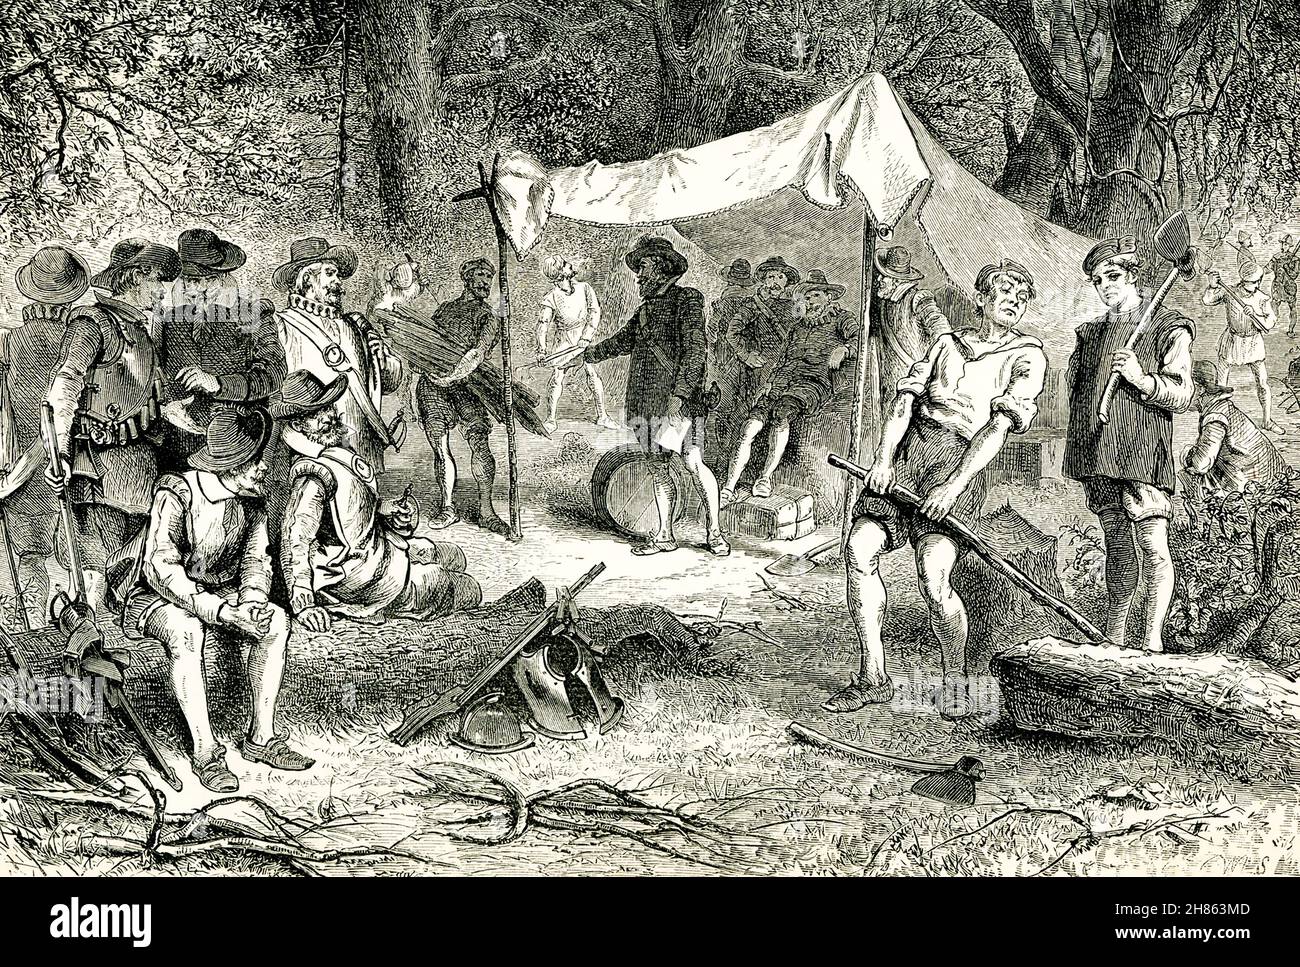 Jamestown, en Virginie, a été la première colonie anglaise permanente en Amérique.Il a été fondé le 13 mai 1607.Cette illustration de la fin de 1890 montre les colons le premier jour, selon ce qui était connu et compris au sujet de la colonie à la fin des années 1800. Banque D'Images